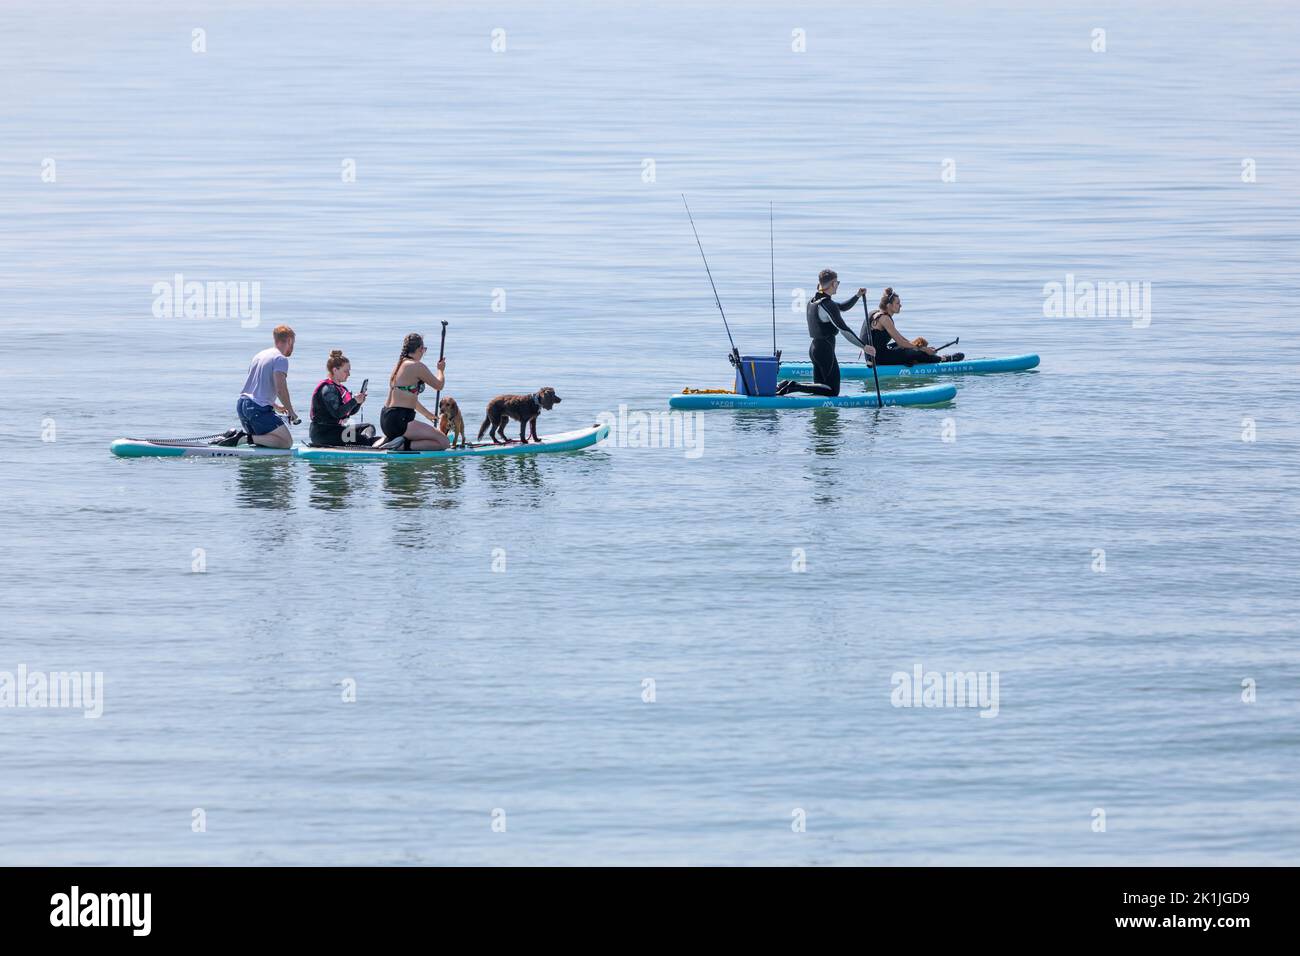 Un grupo de personas con perros de mascotas remar en un mar azul y tranquilo. Foto de stock